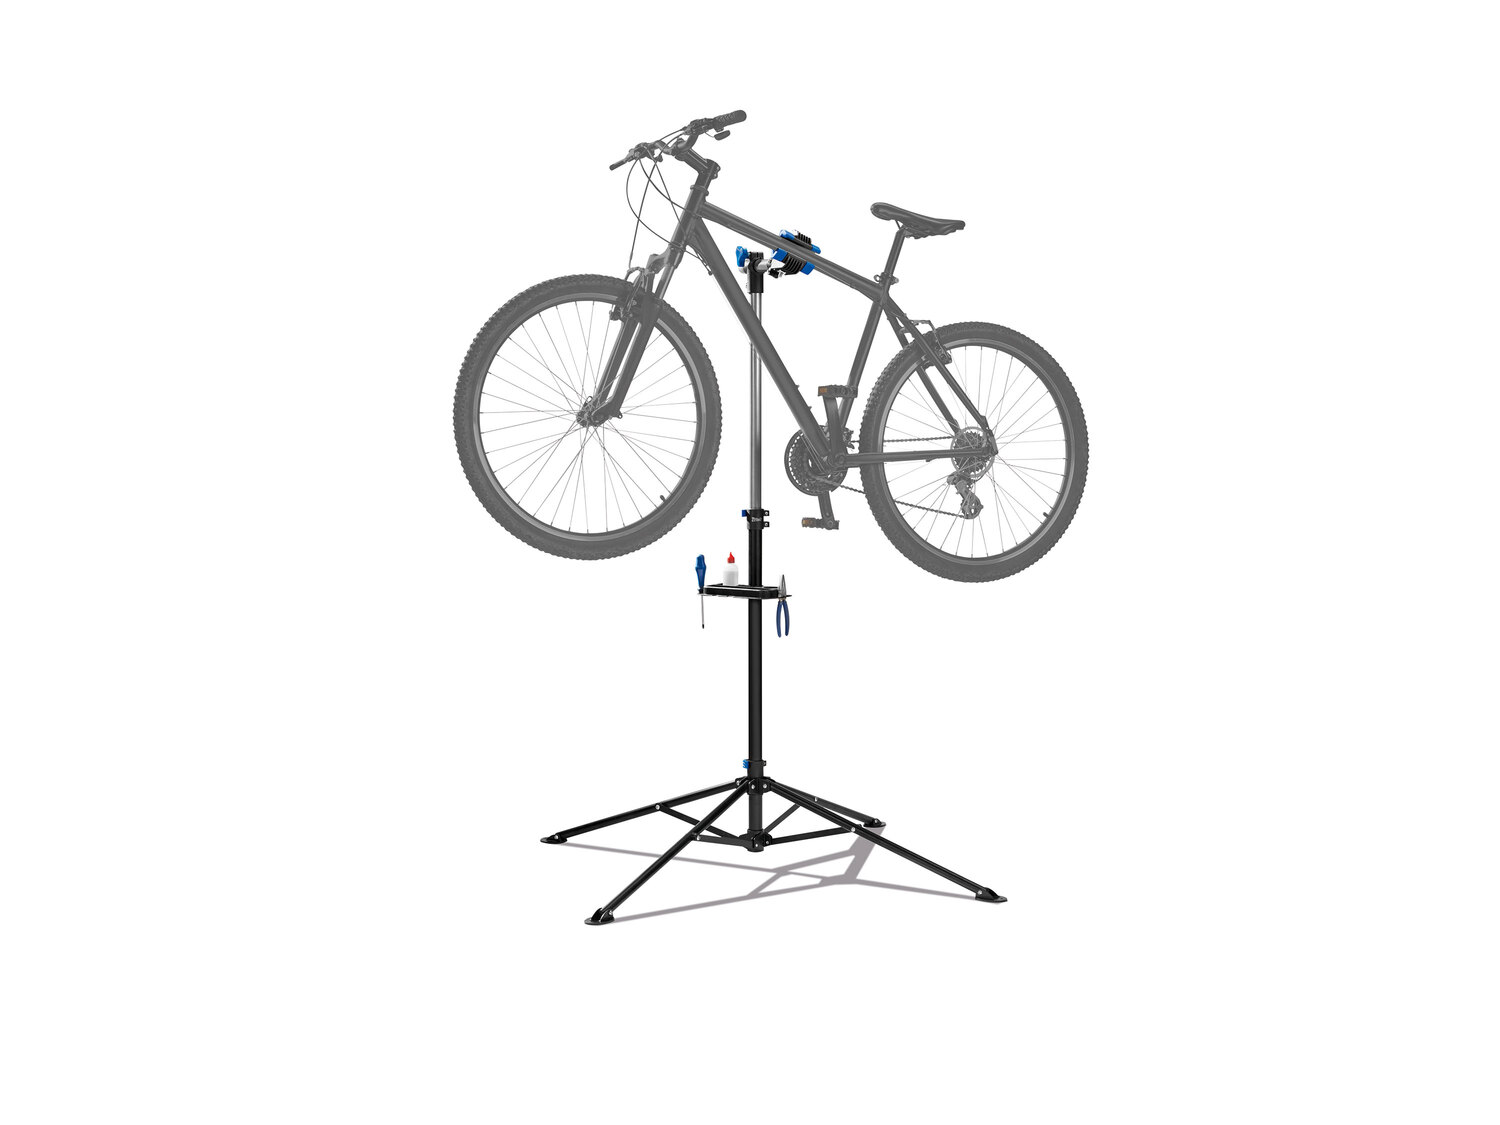 Stojak montażowy do roweru Crivit, cena 149,00 PLN 
- ok. 188 x 104 cm (wys. x ...